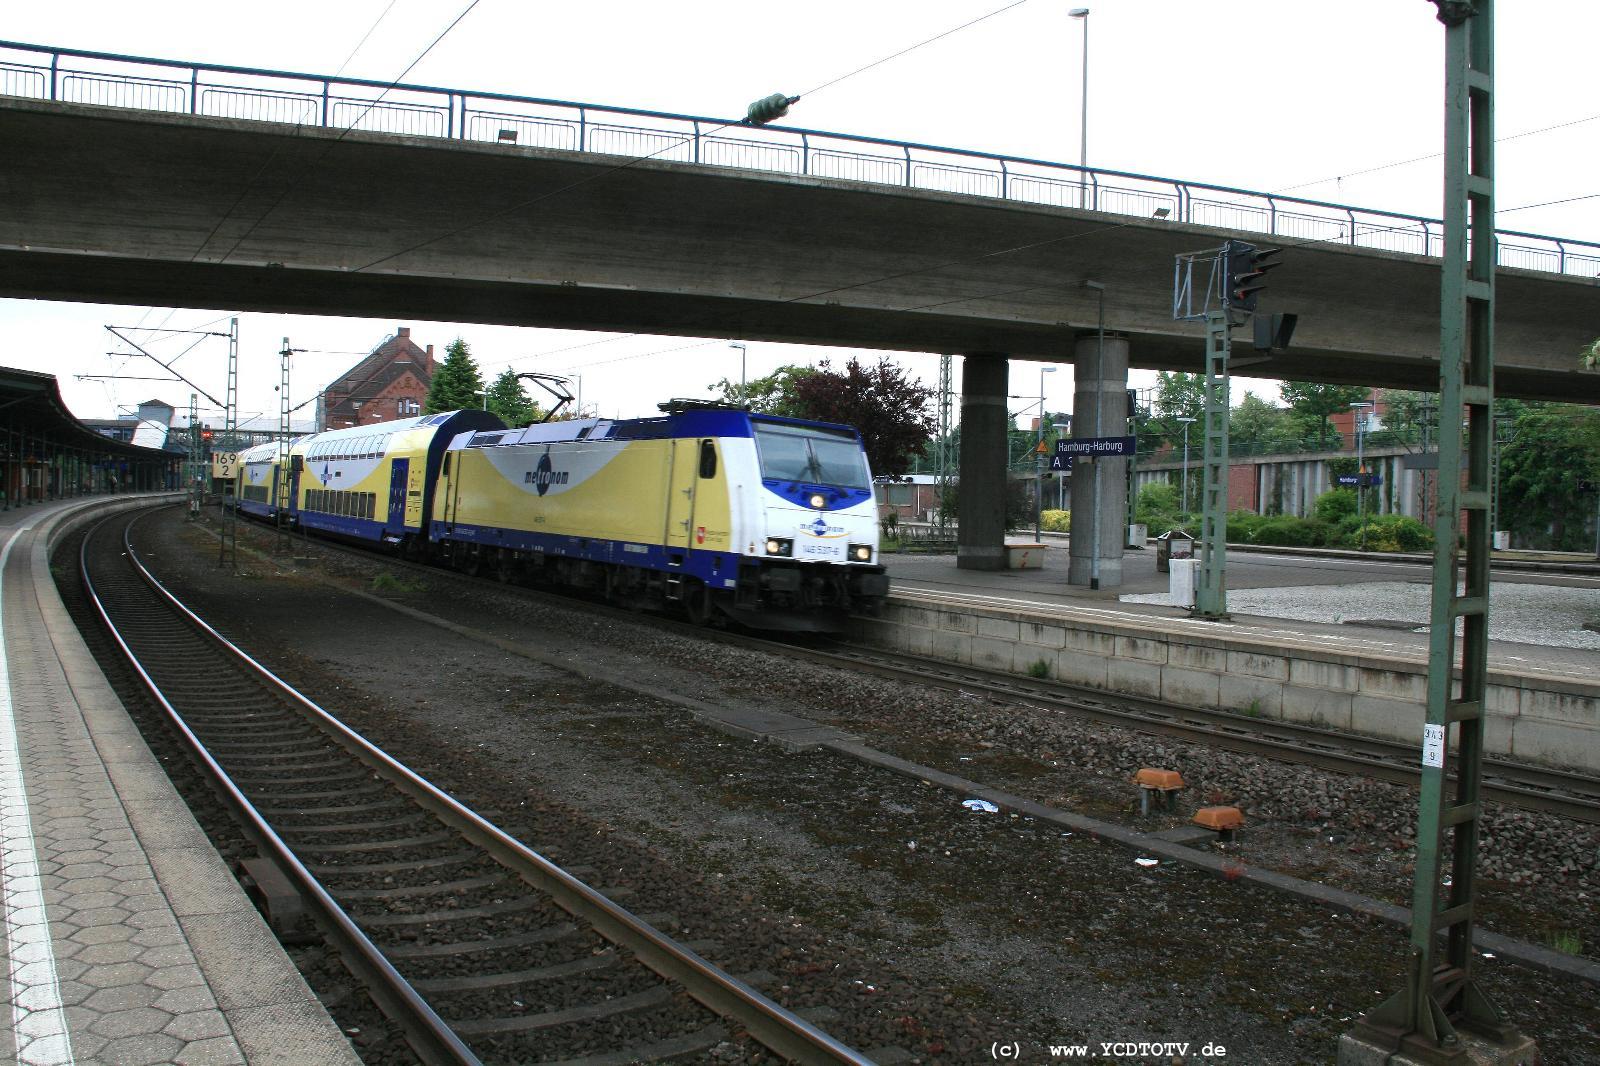  Bahnhof Hamburg-Harburg, 18.05.2011, 14:40 146 537-6 Richtung Sden 